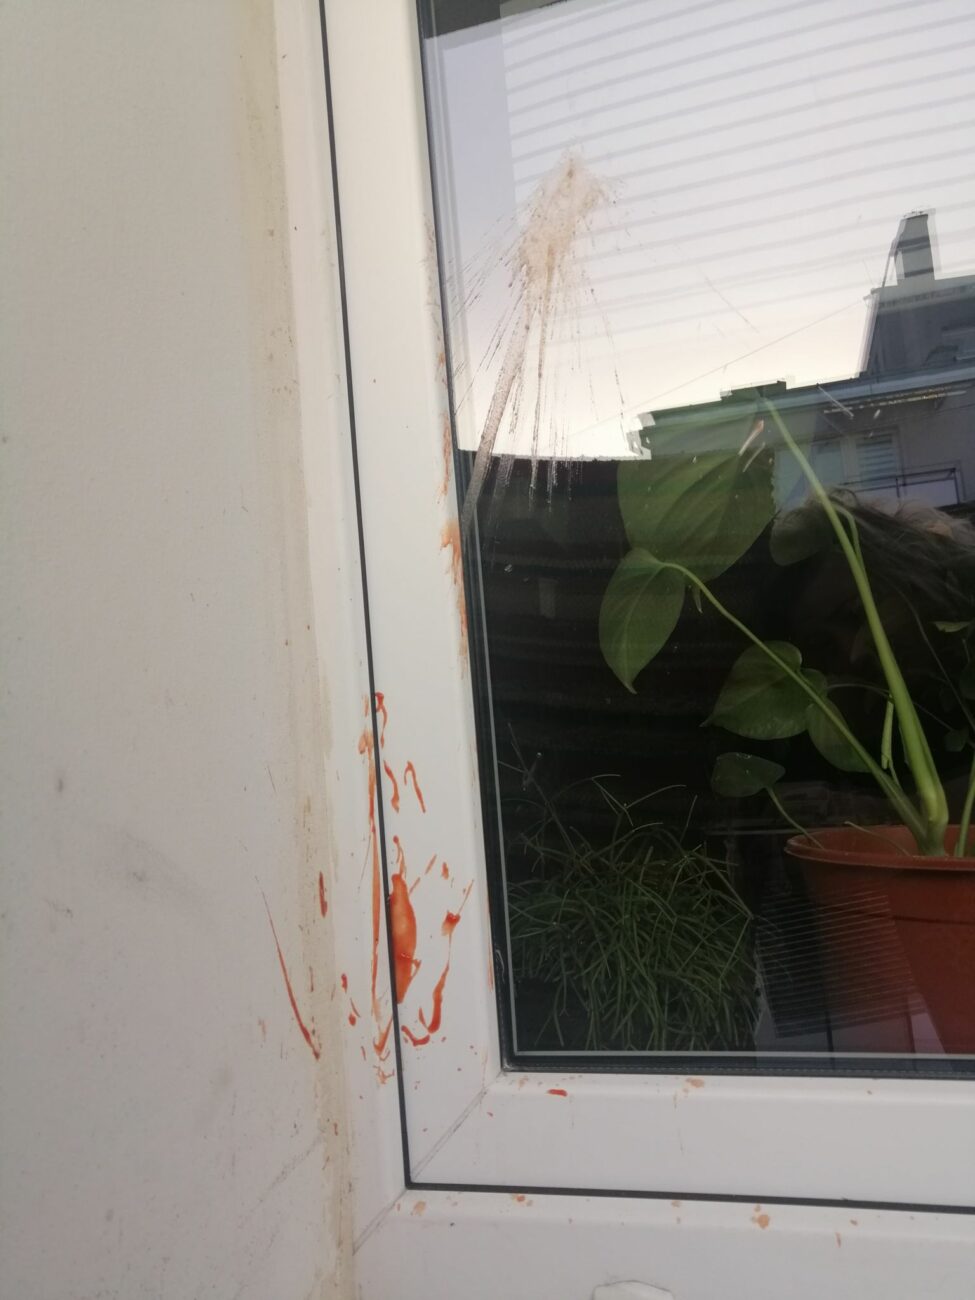 Studenci rzucali w okna jajkami i keczupem? Jest zgłoszenie na policję